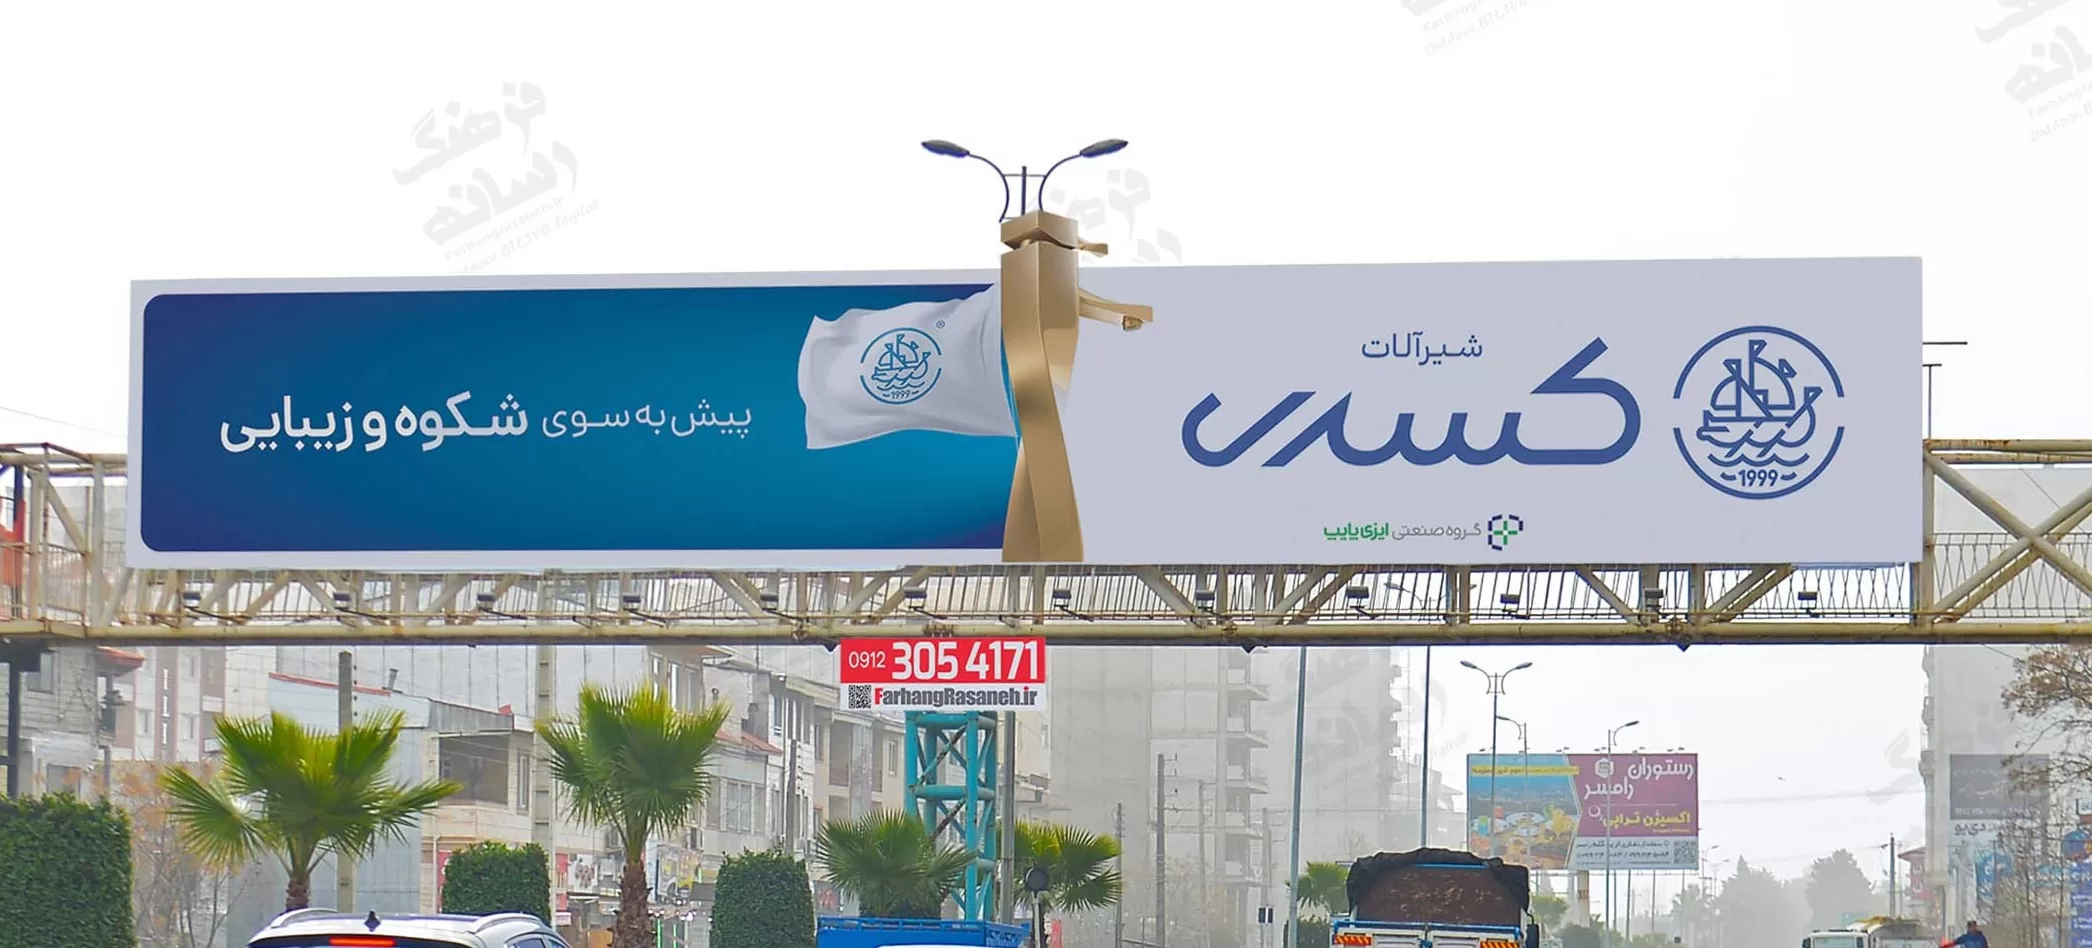 تبلیغات محیطی و اجاره بیلبورد در استان مازندران